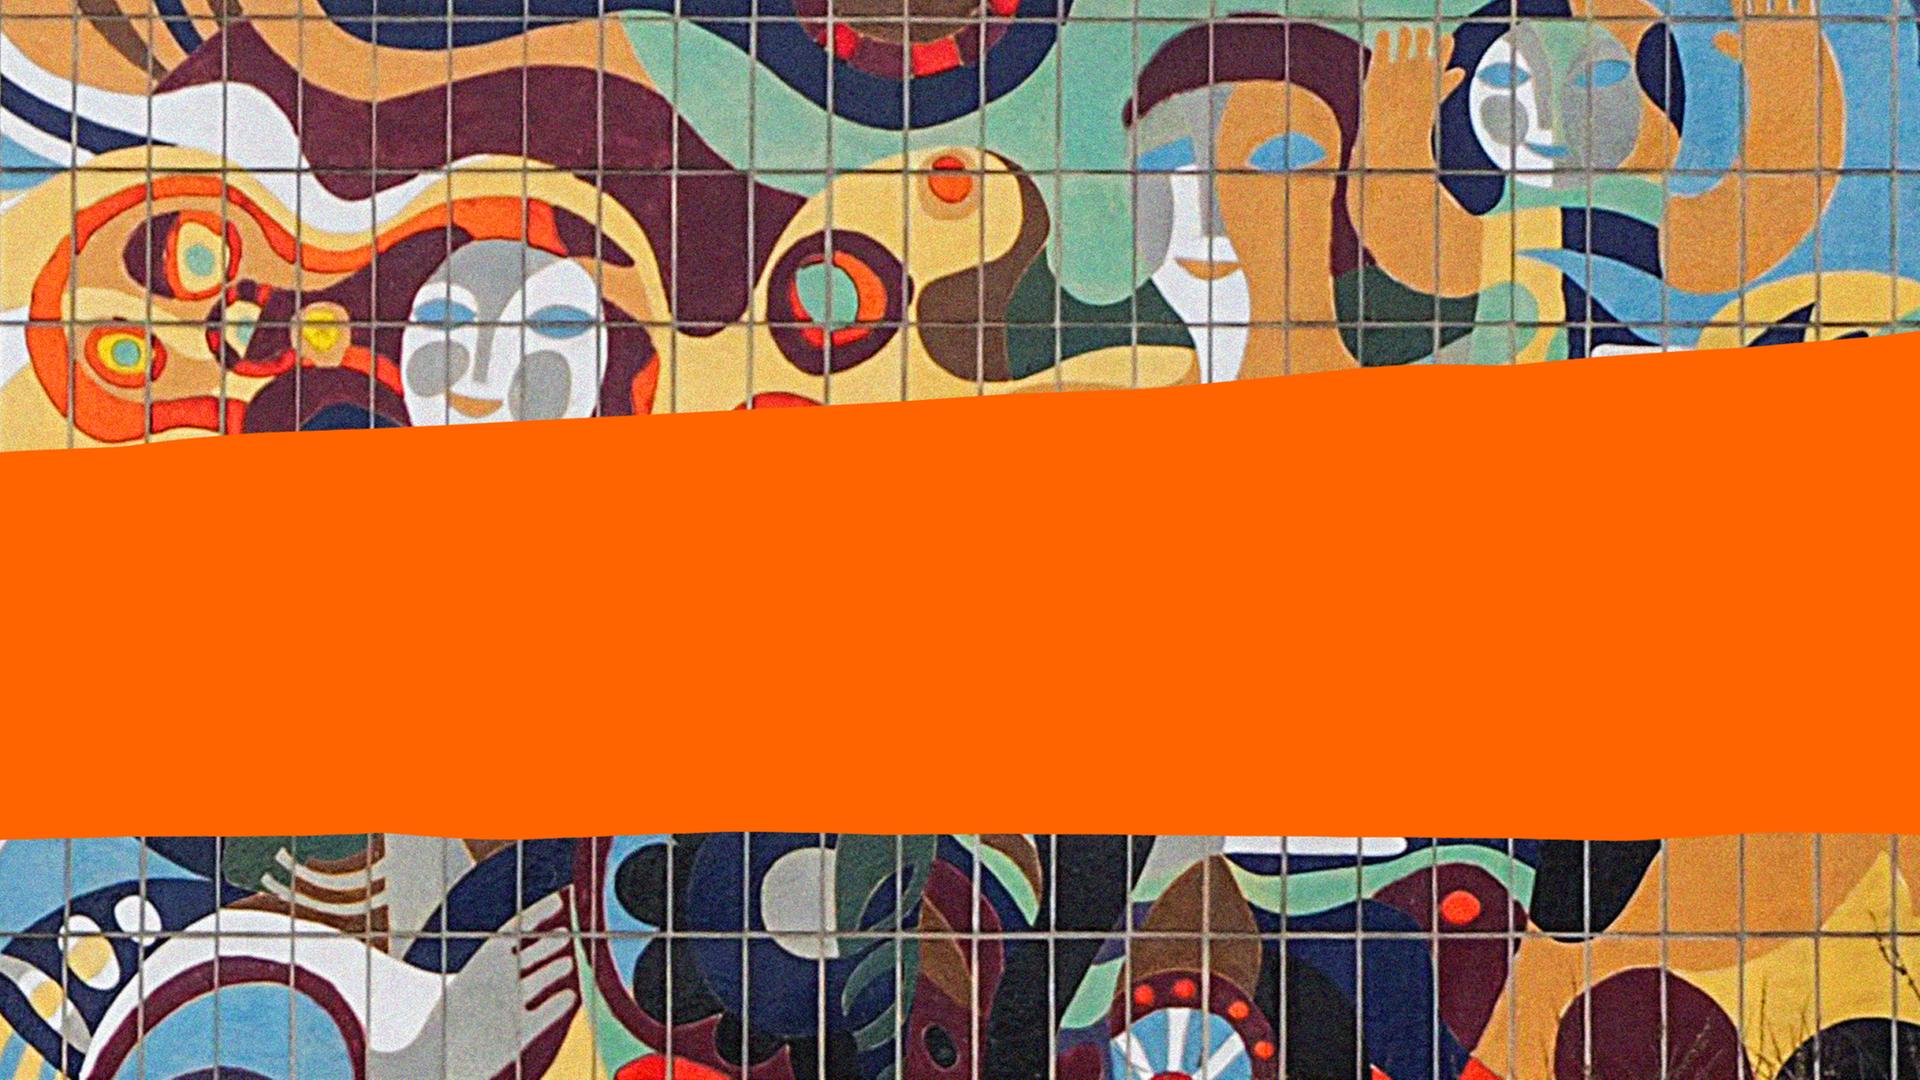 Cover des Podcasts "Jüdisch in der DDR".
Über bemalten Kacheln mit Figuren ist auf orangenem Hintergrund der Schriftzug "Jüdisch in der DDR" zu lesen.